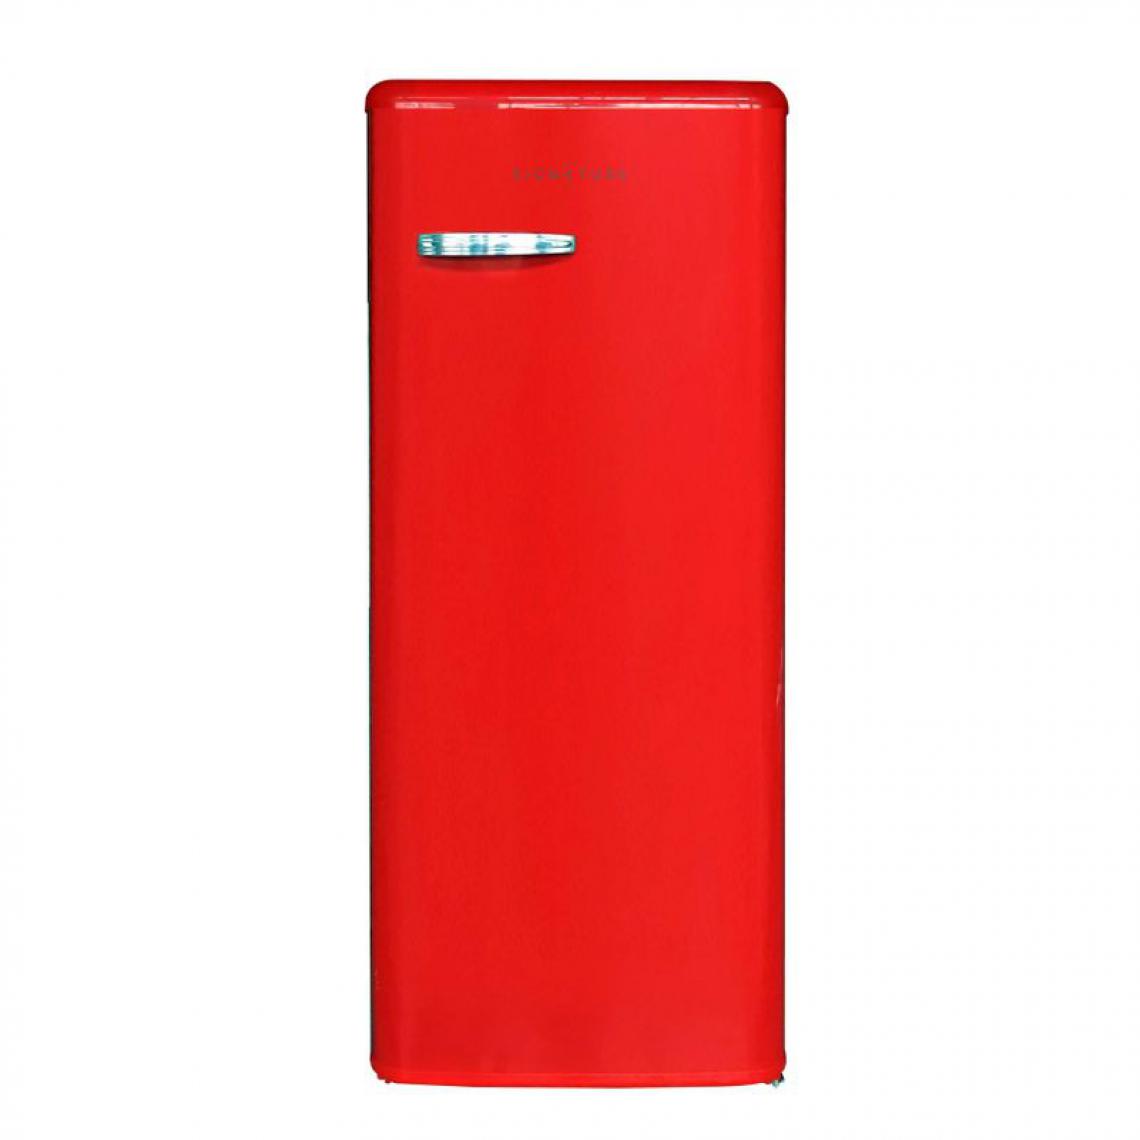 Signature - Réfrigérateur 1 porte SIGNATURE SFM242VR 242 L Rouge - Réfrigérateur